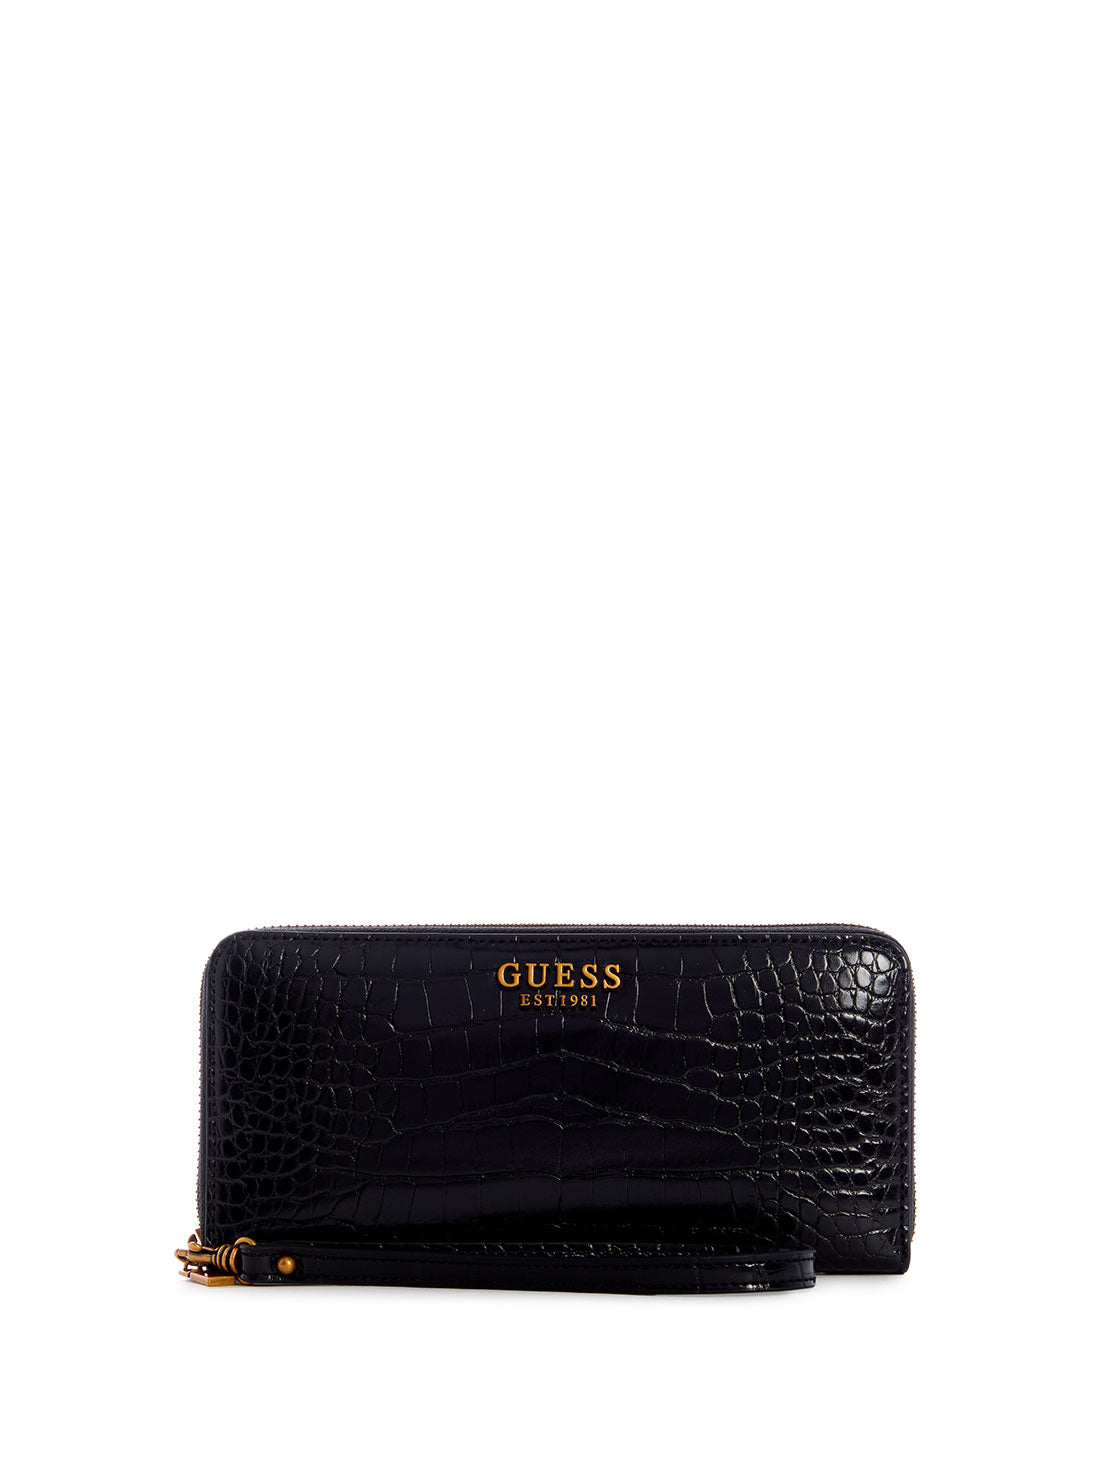 GUESS Women's Black Laurel Croco Large Wallet CB850046 Front View